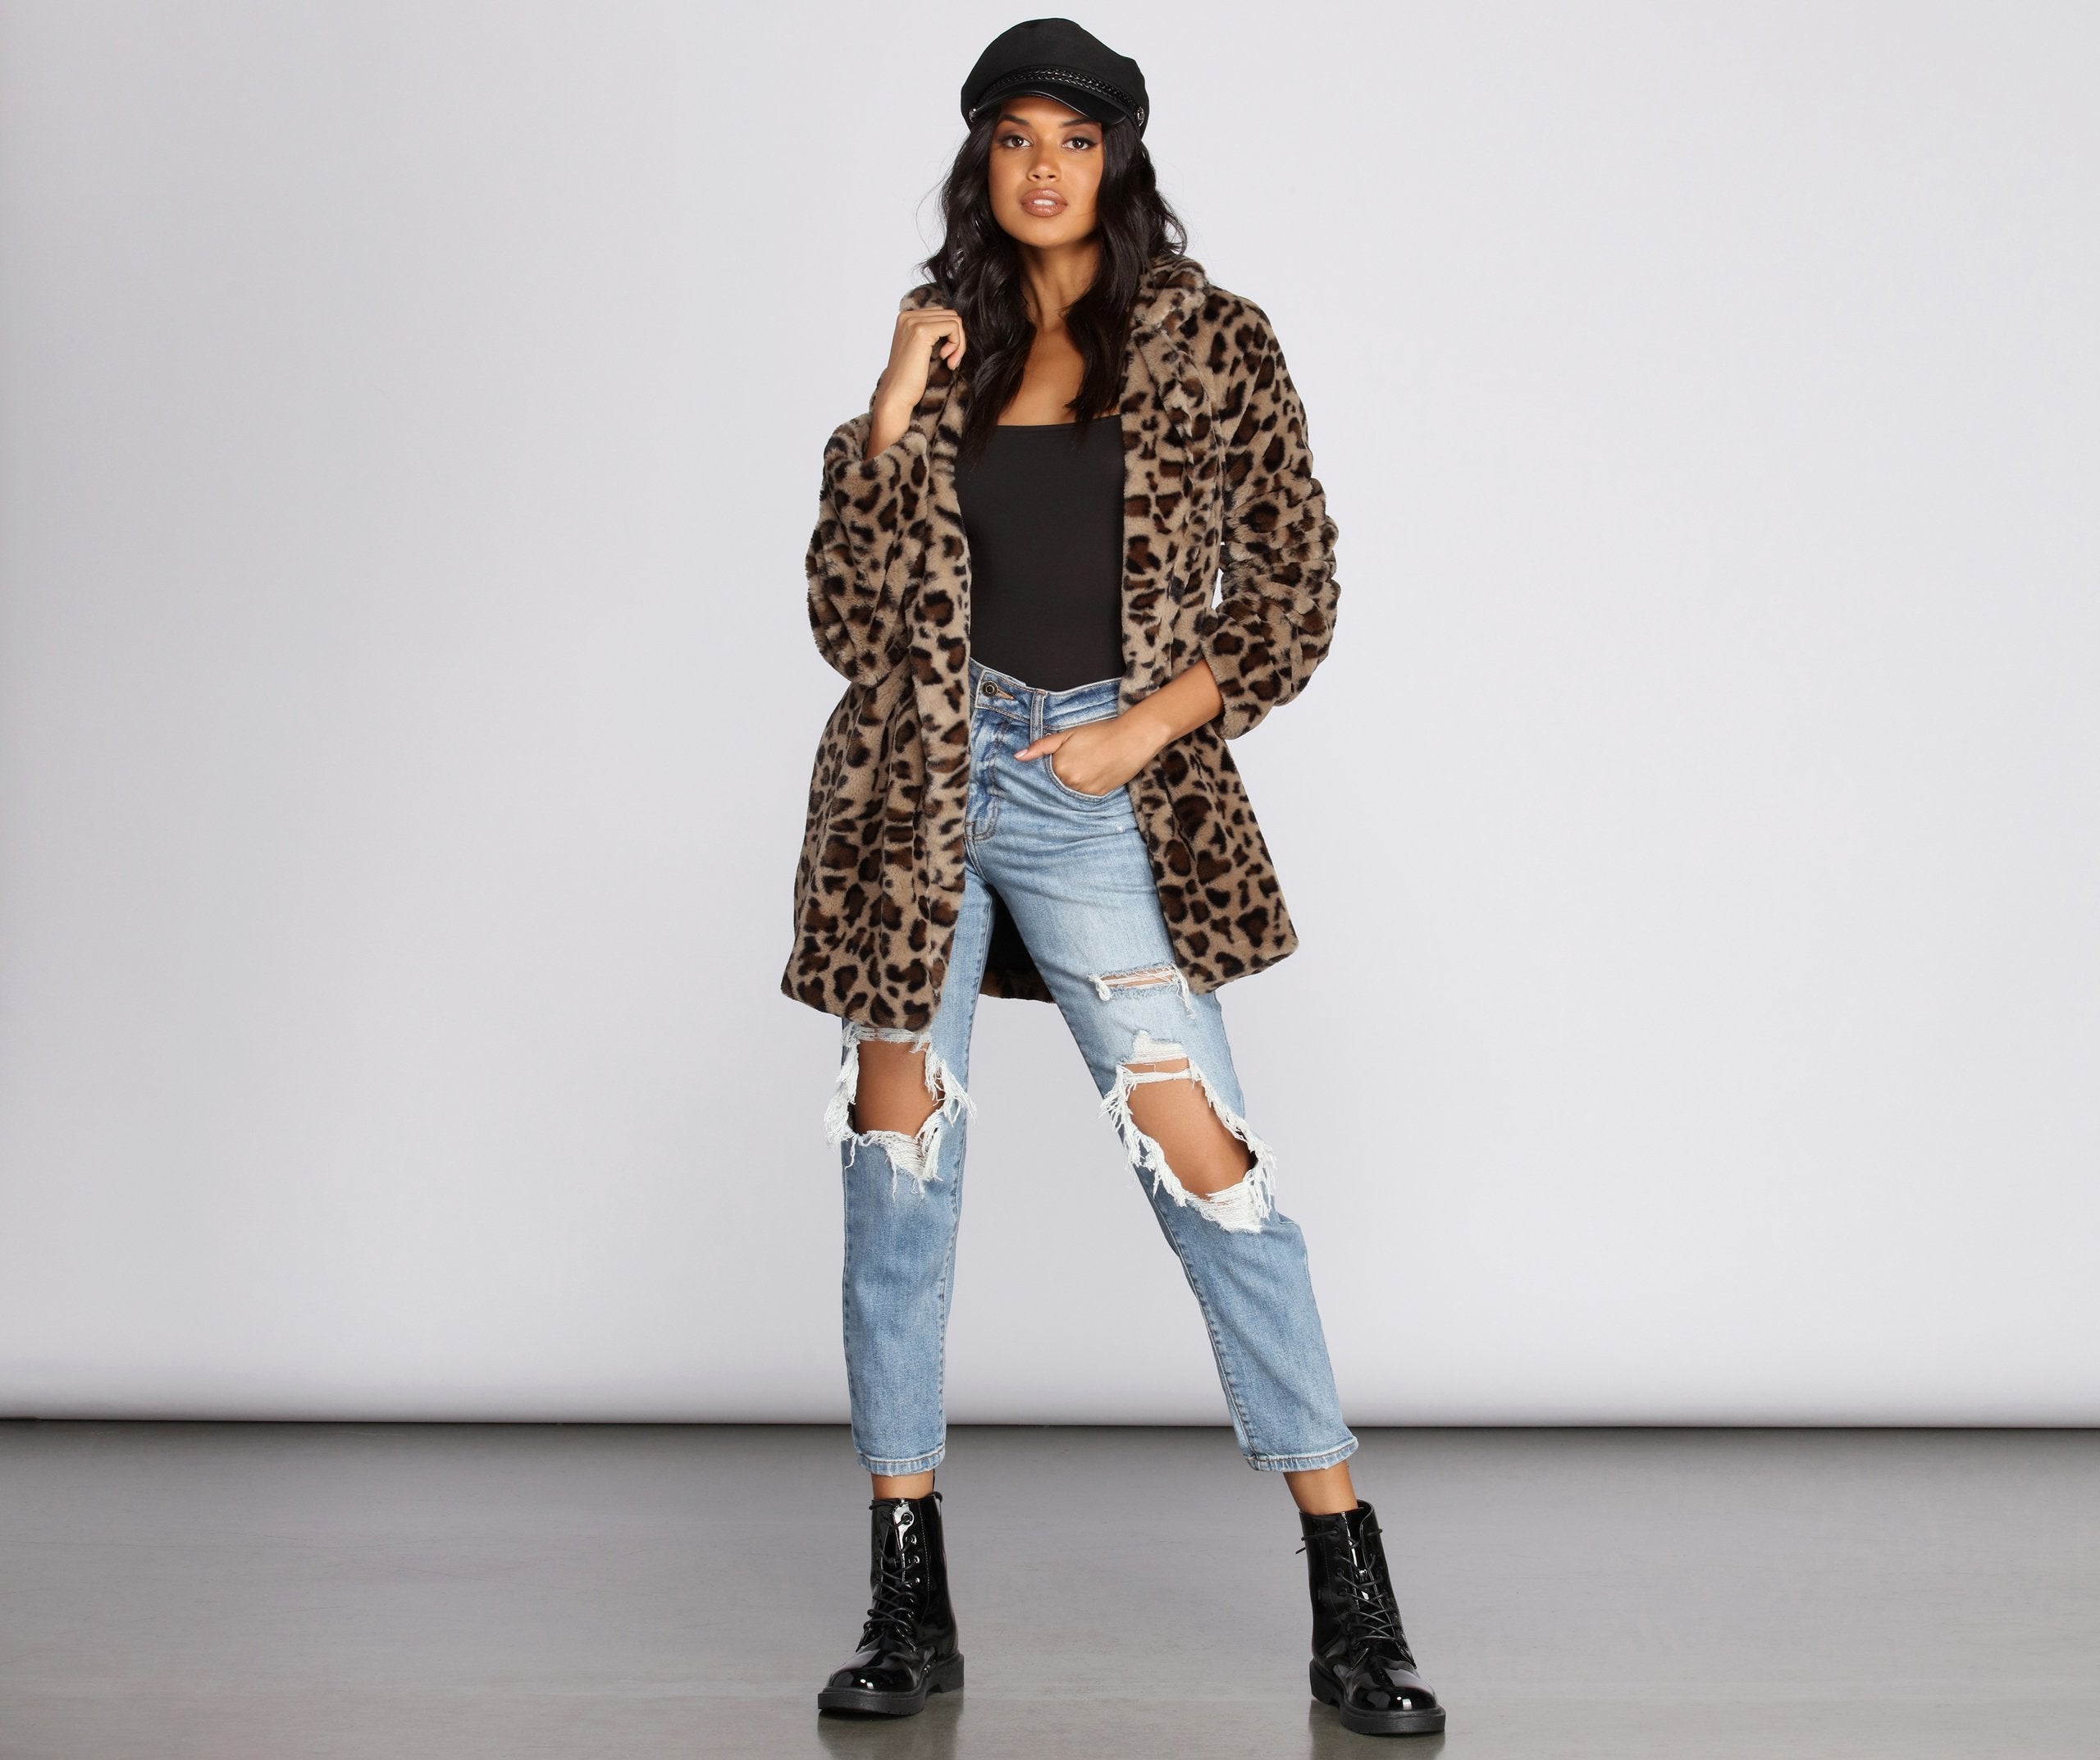 Fierce Leopard Faux Fur Jacket - Lady Occasions